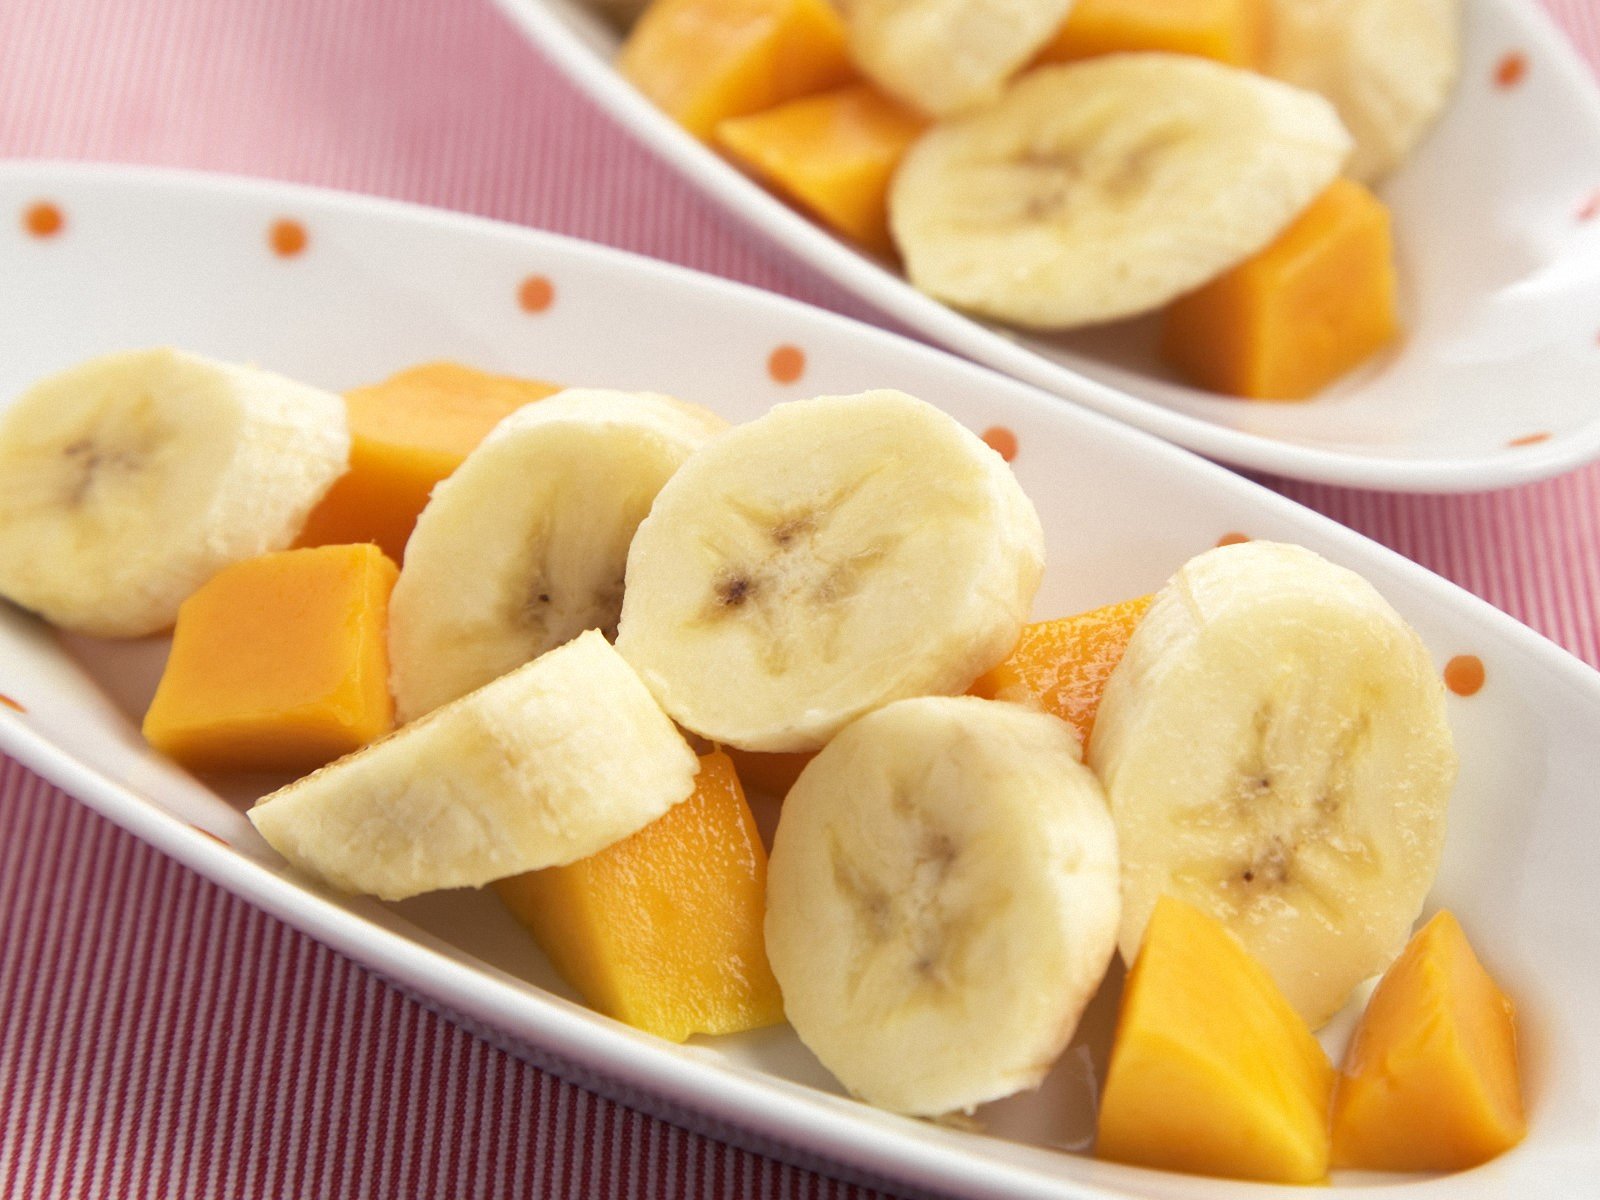 水果、芒果、香蕉 - 免费可商用图片 - CC0素材网